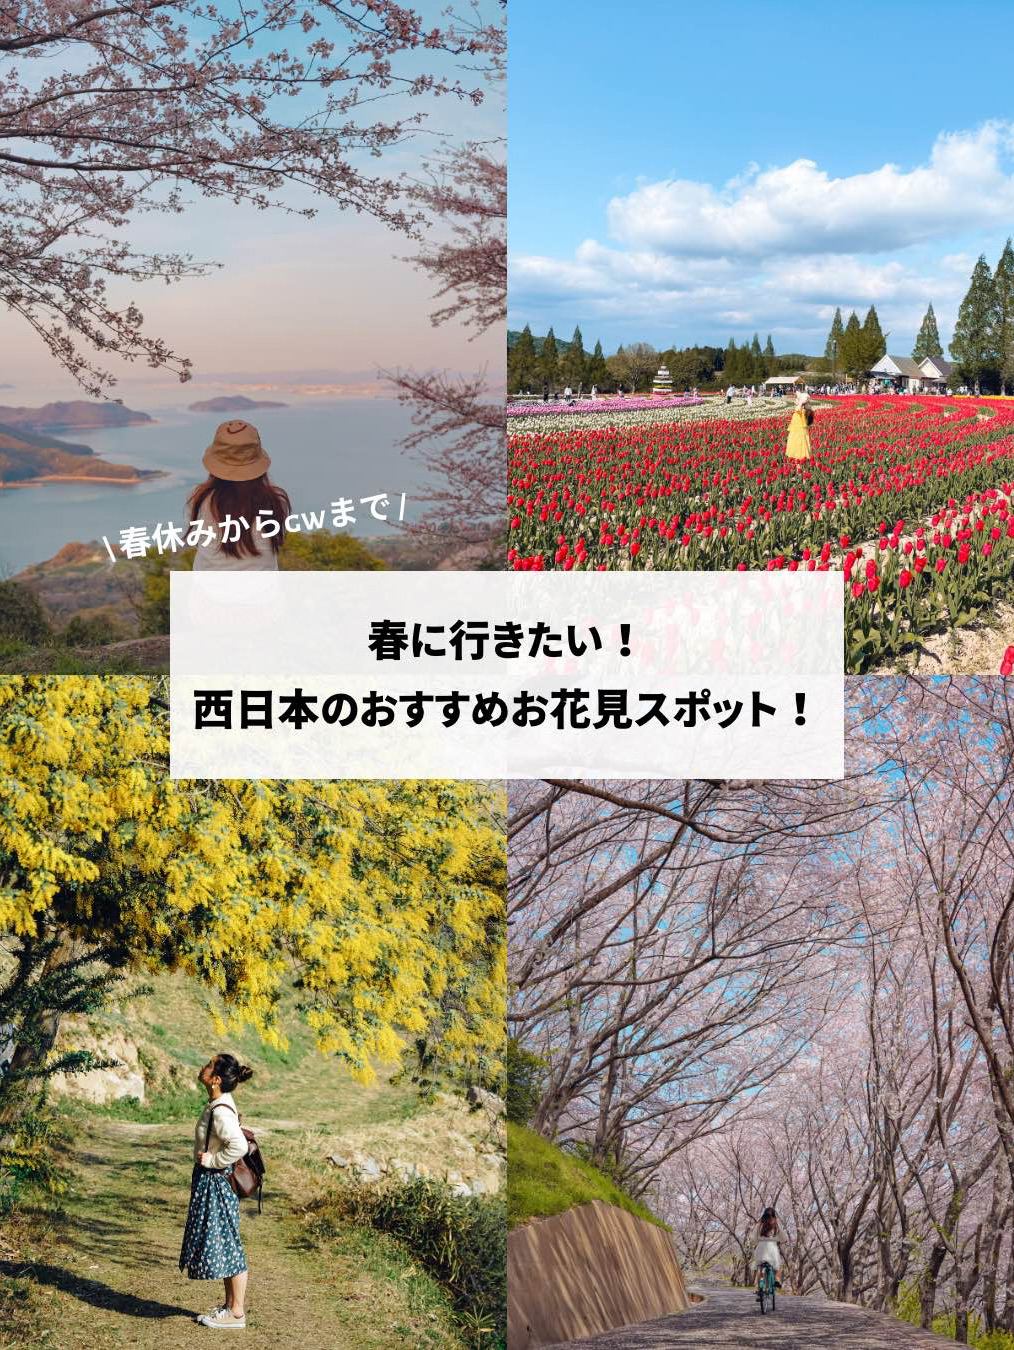 【日本绝景】从春假到黄金周,赏樱的最佳时间!